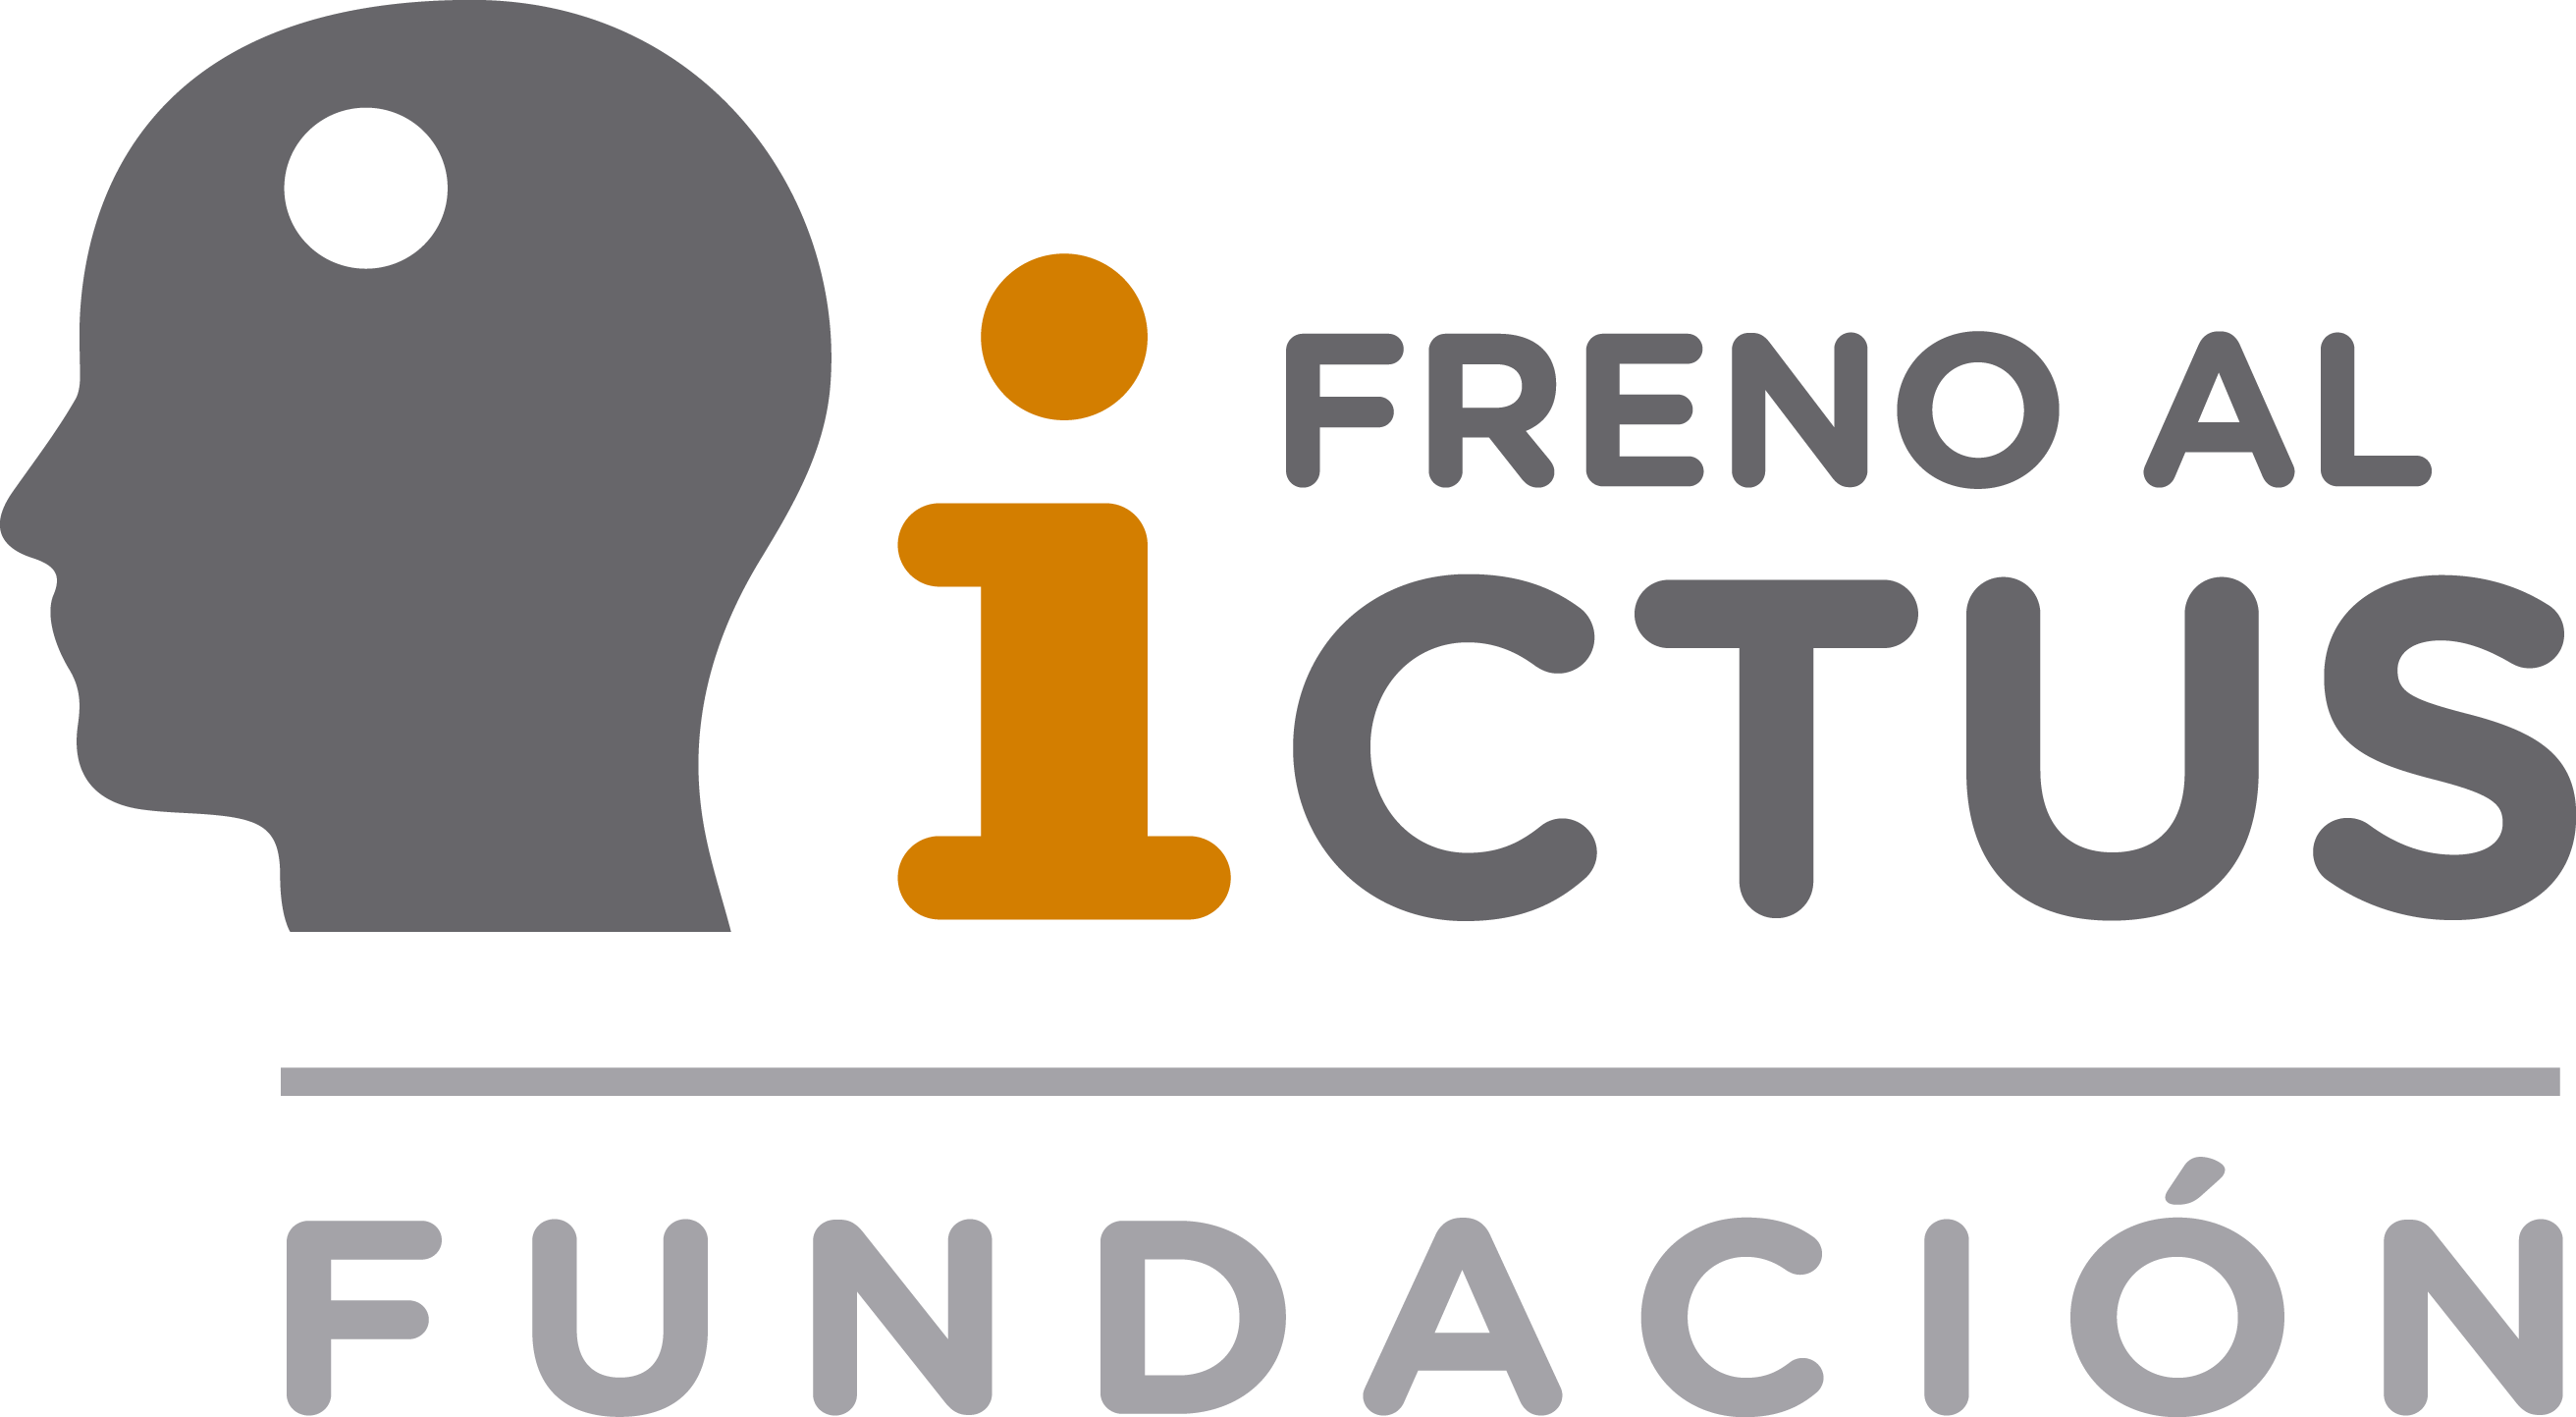 Fundación Freno al Ictus